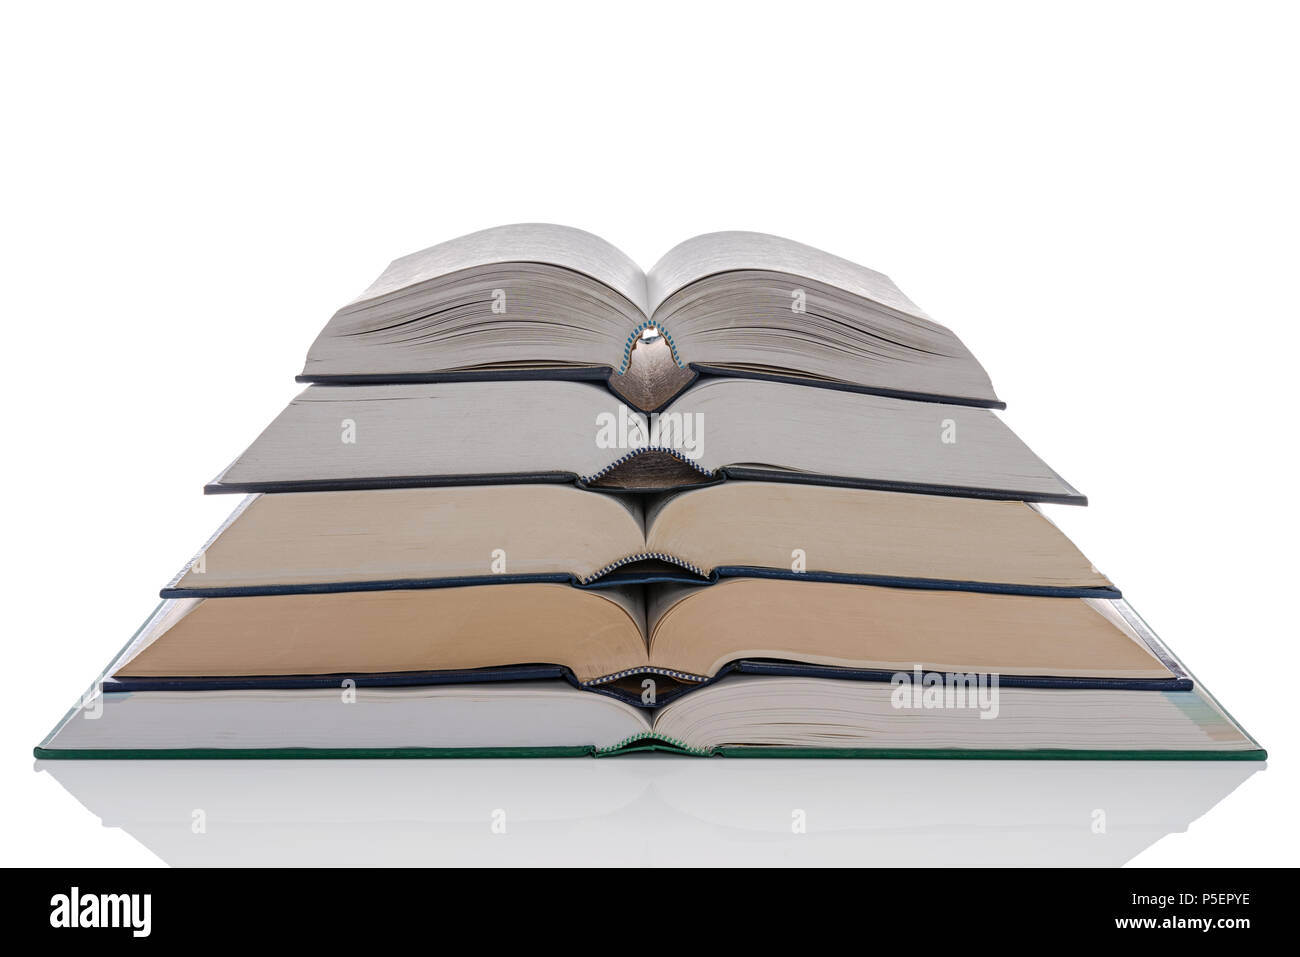 Ein Haufen von fünf offene gebundene Bücher auf einem weißen Hintergrund. Stockfoto